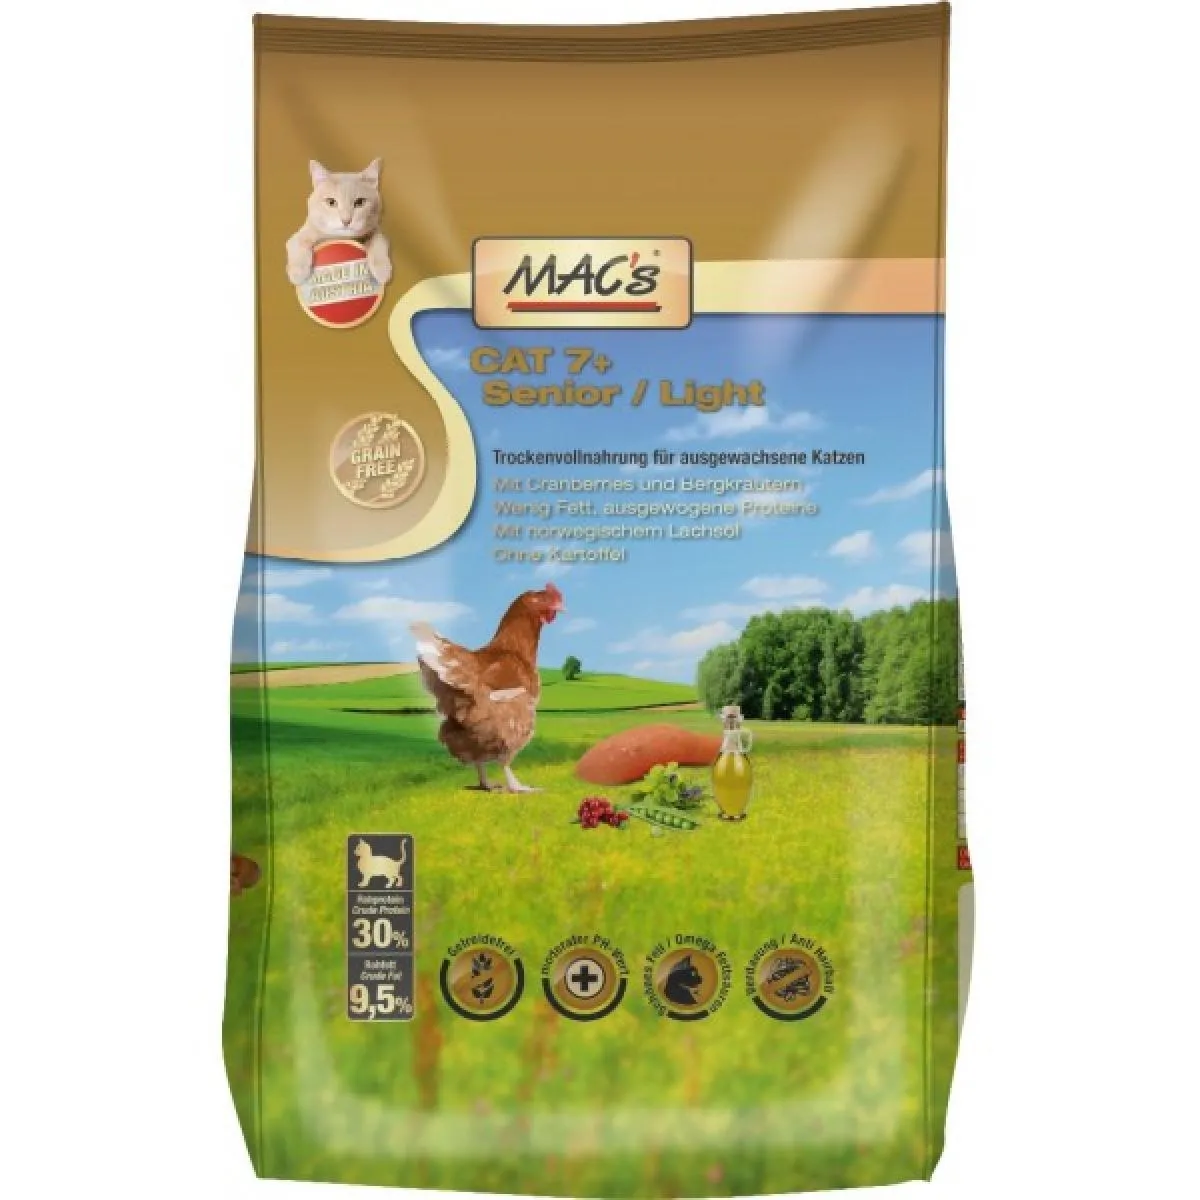 Mac’s 7+ Senior Chicken/ Light - Супер премиум суха храна за котки над 7 годишна възраст, без зърно , с пилешко месо,червена боровинка и картофи 7 кг.